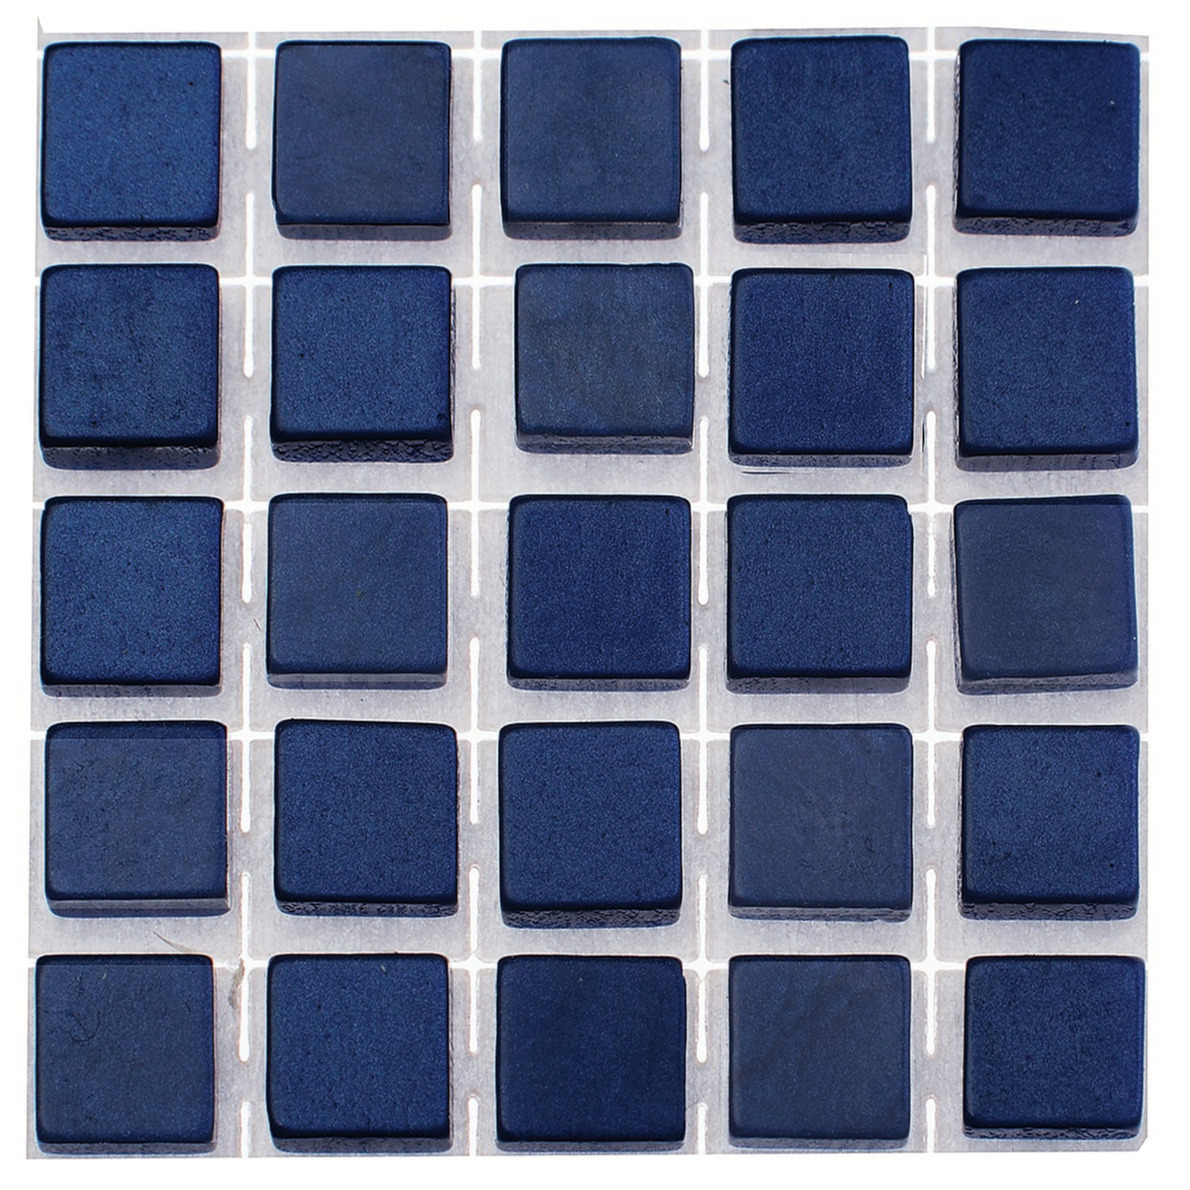 119x stuks mozaieken maken steentjes-tegels kleur donkerblauw 5 x 5 x 2 mm